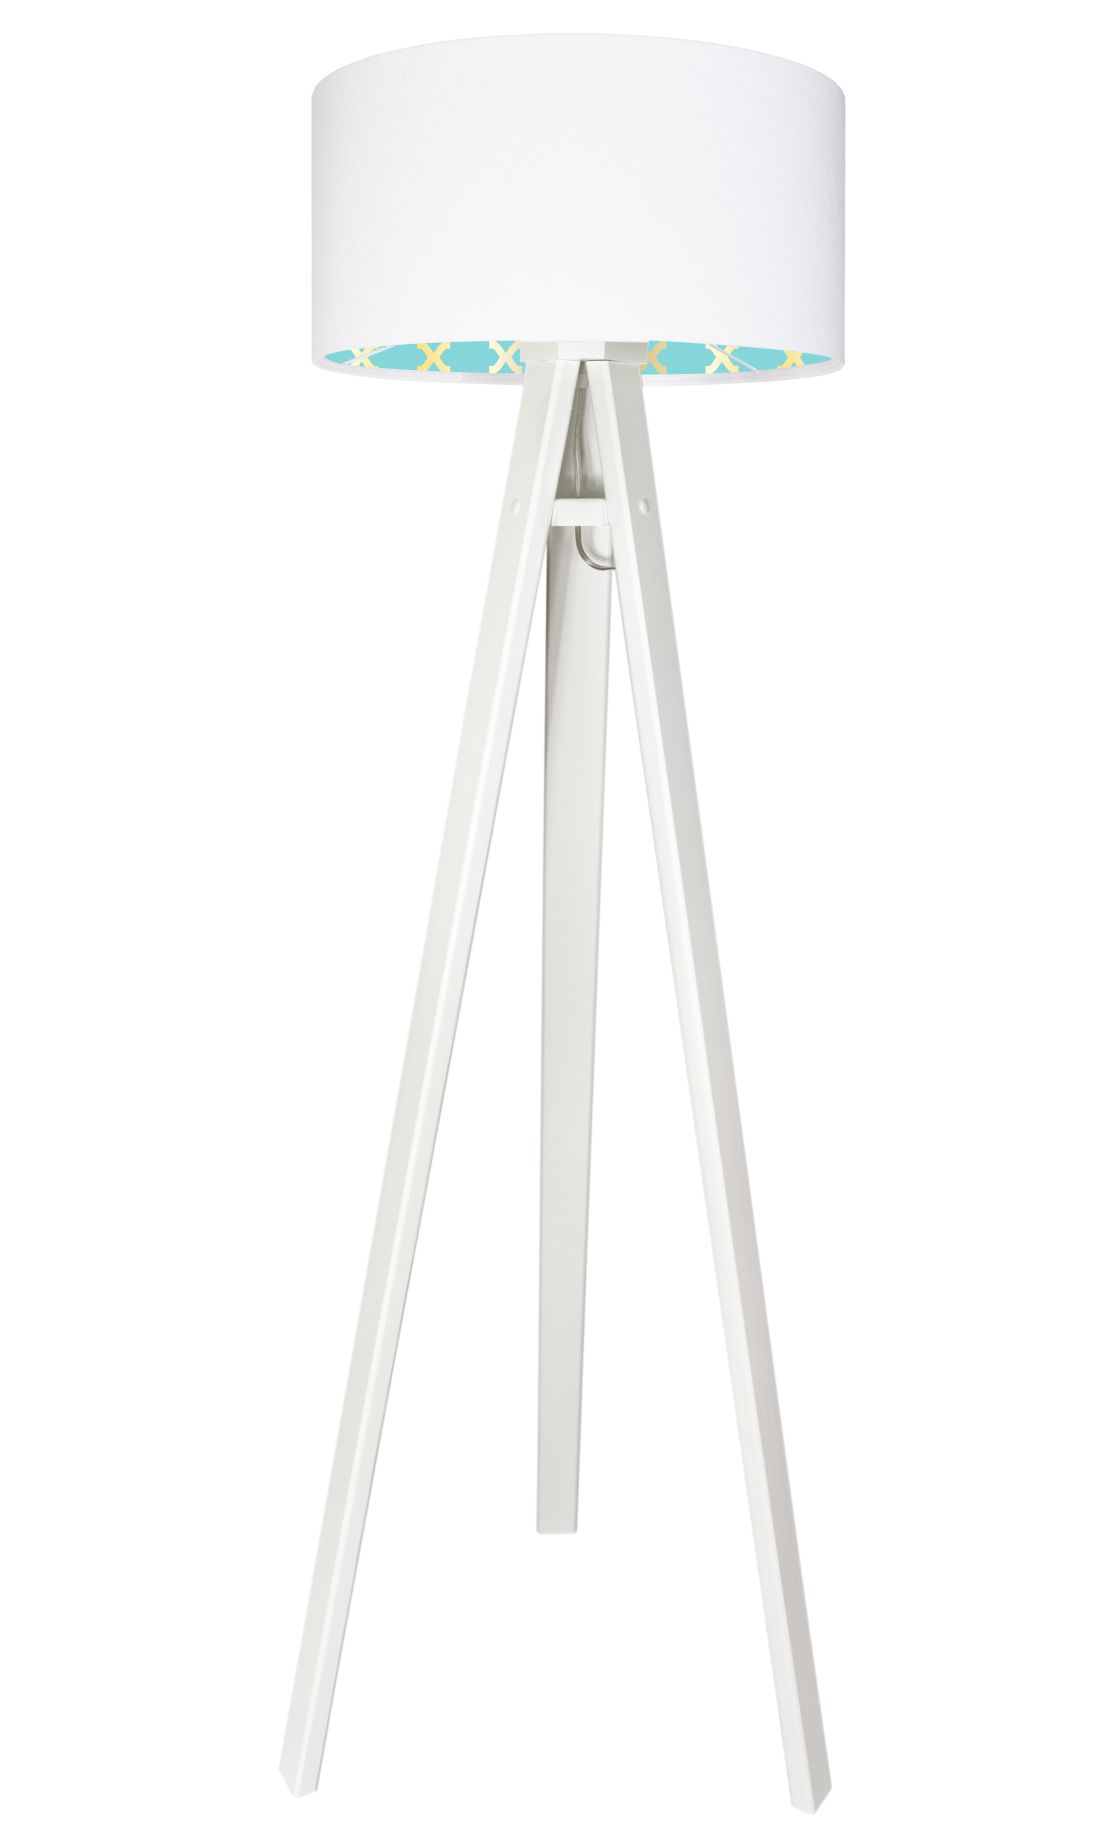 Stehlampe Weiß Türkis Retro Dreibein 140cm Wohnzimmer